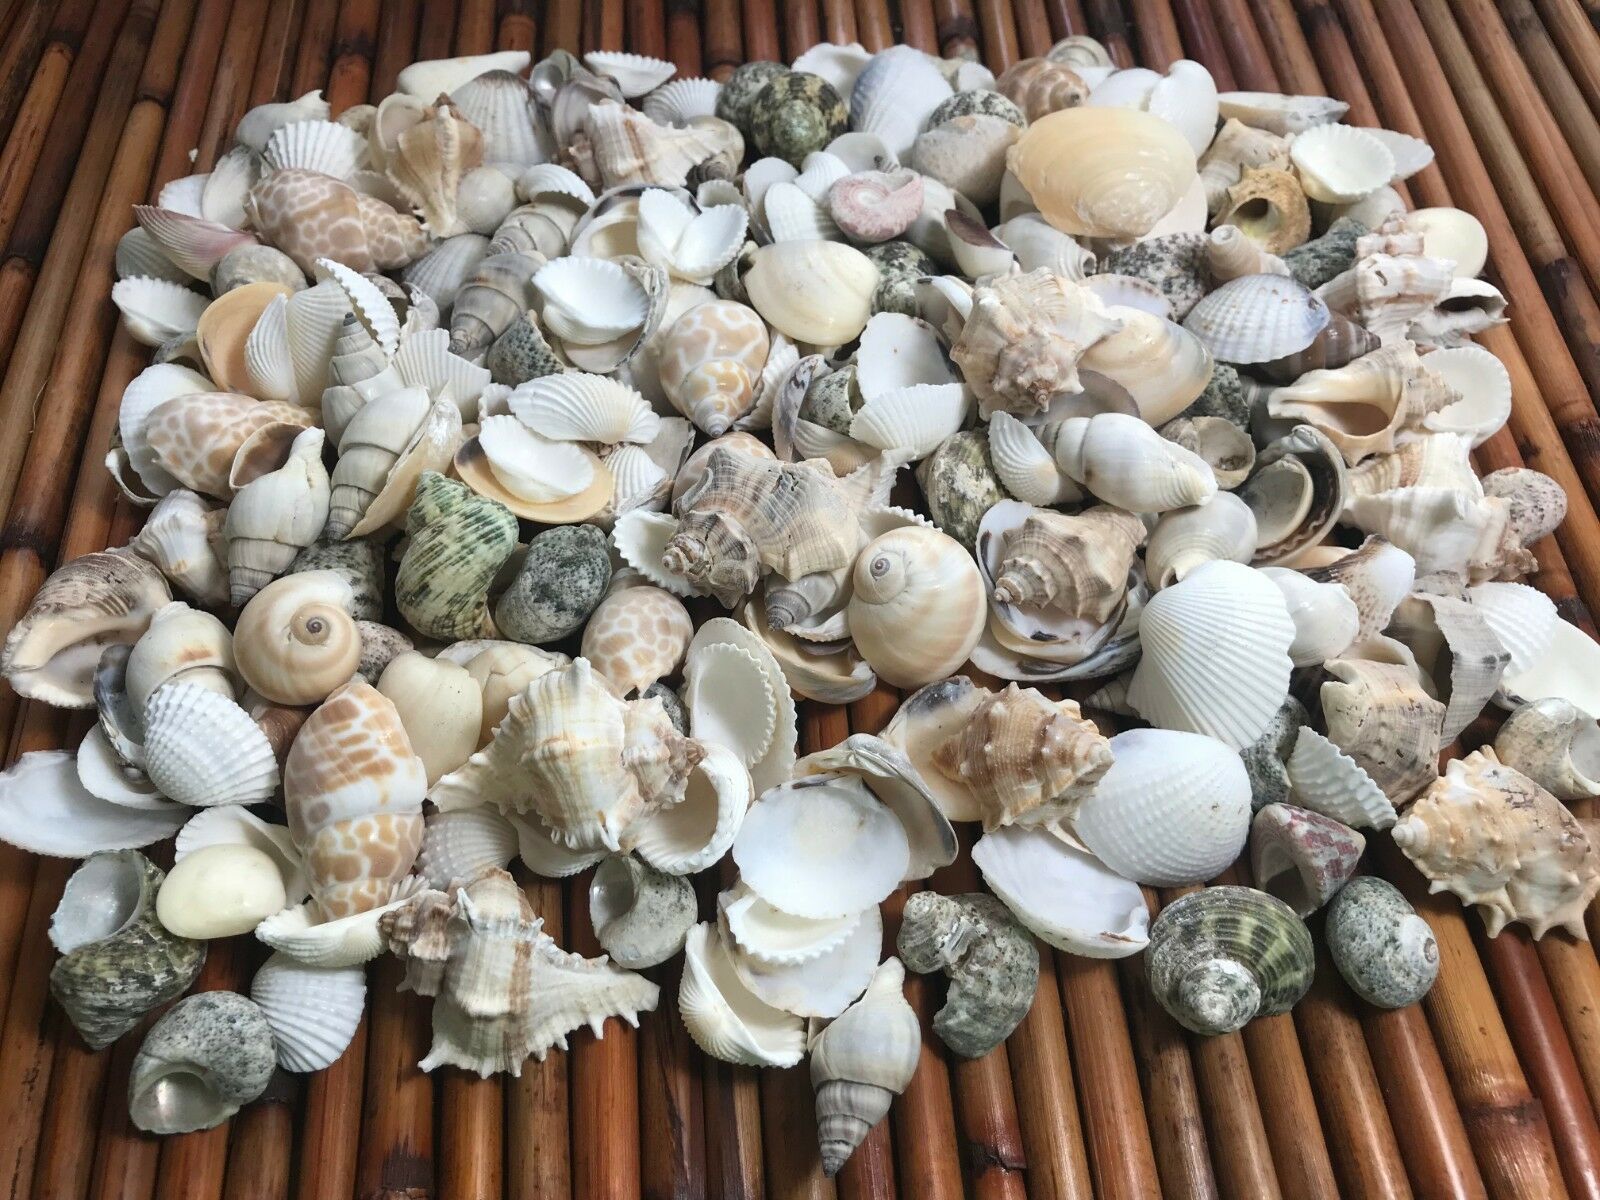 Medium Mixed Seashells, Assorted Craft Shells Mix 1-2" 200+ Pcs 1 Kilo Lot# 1013